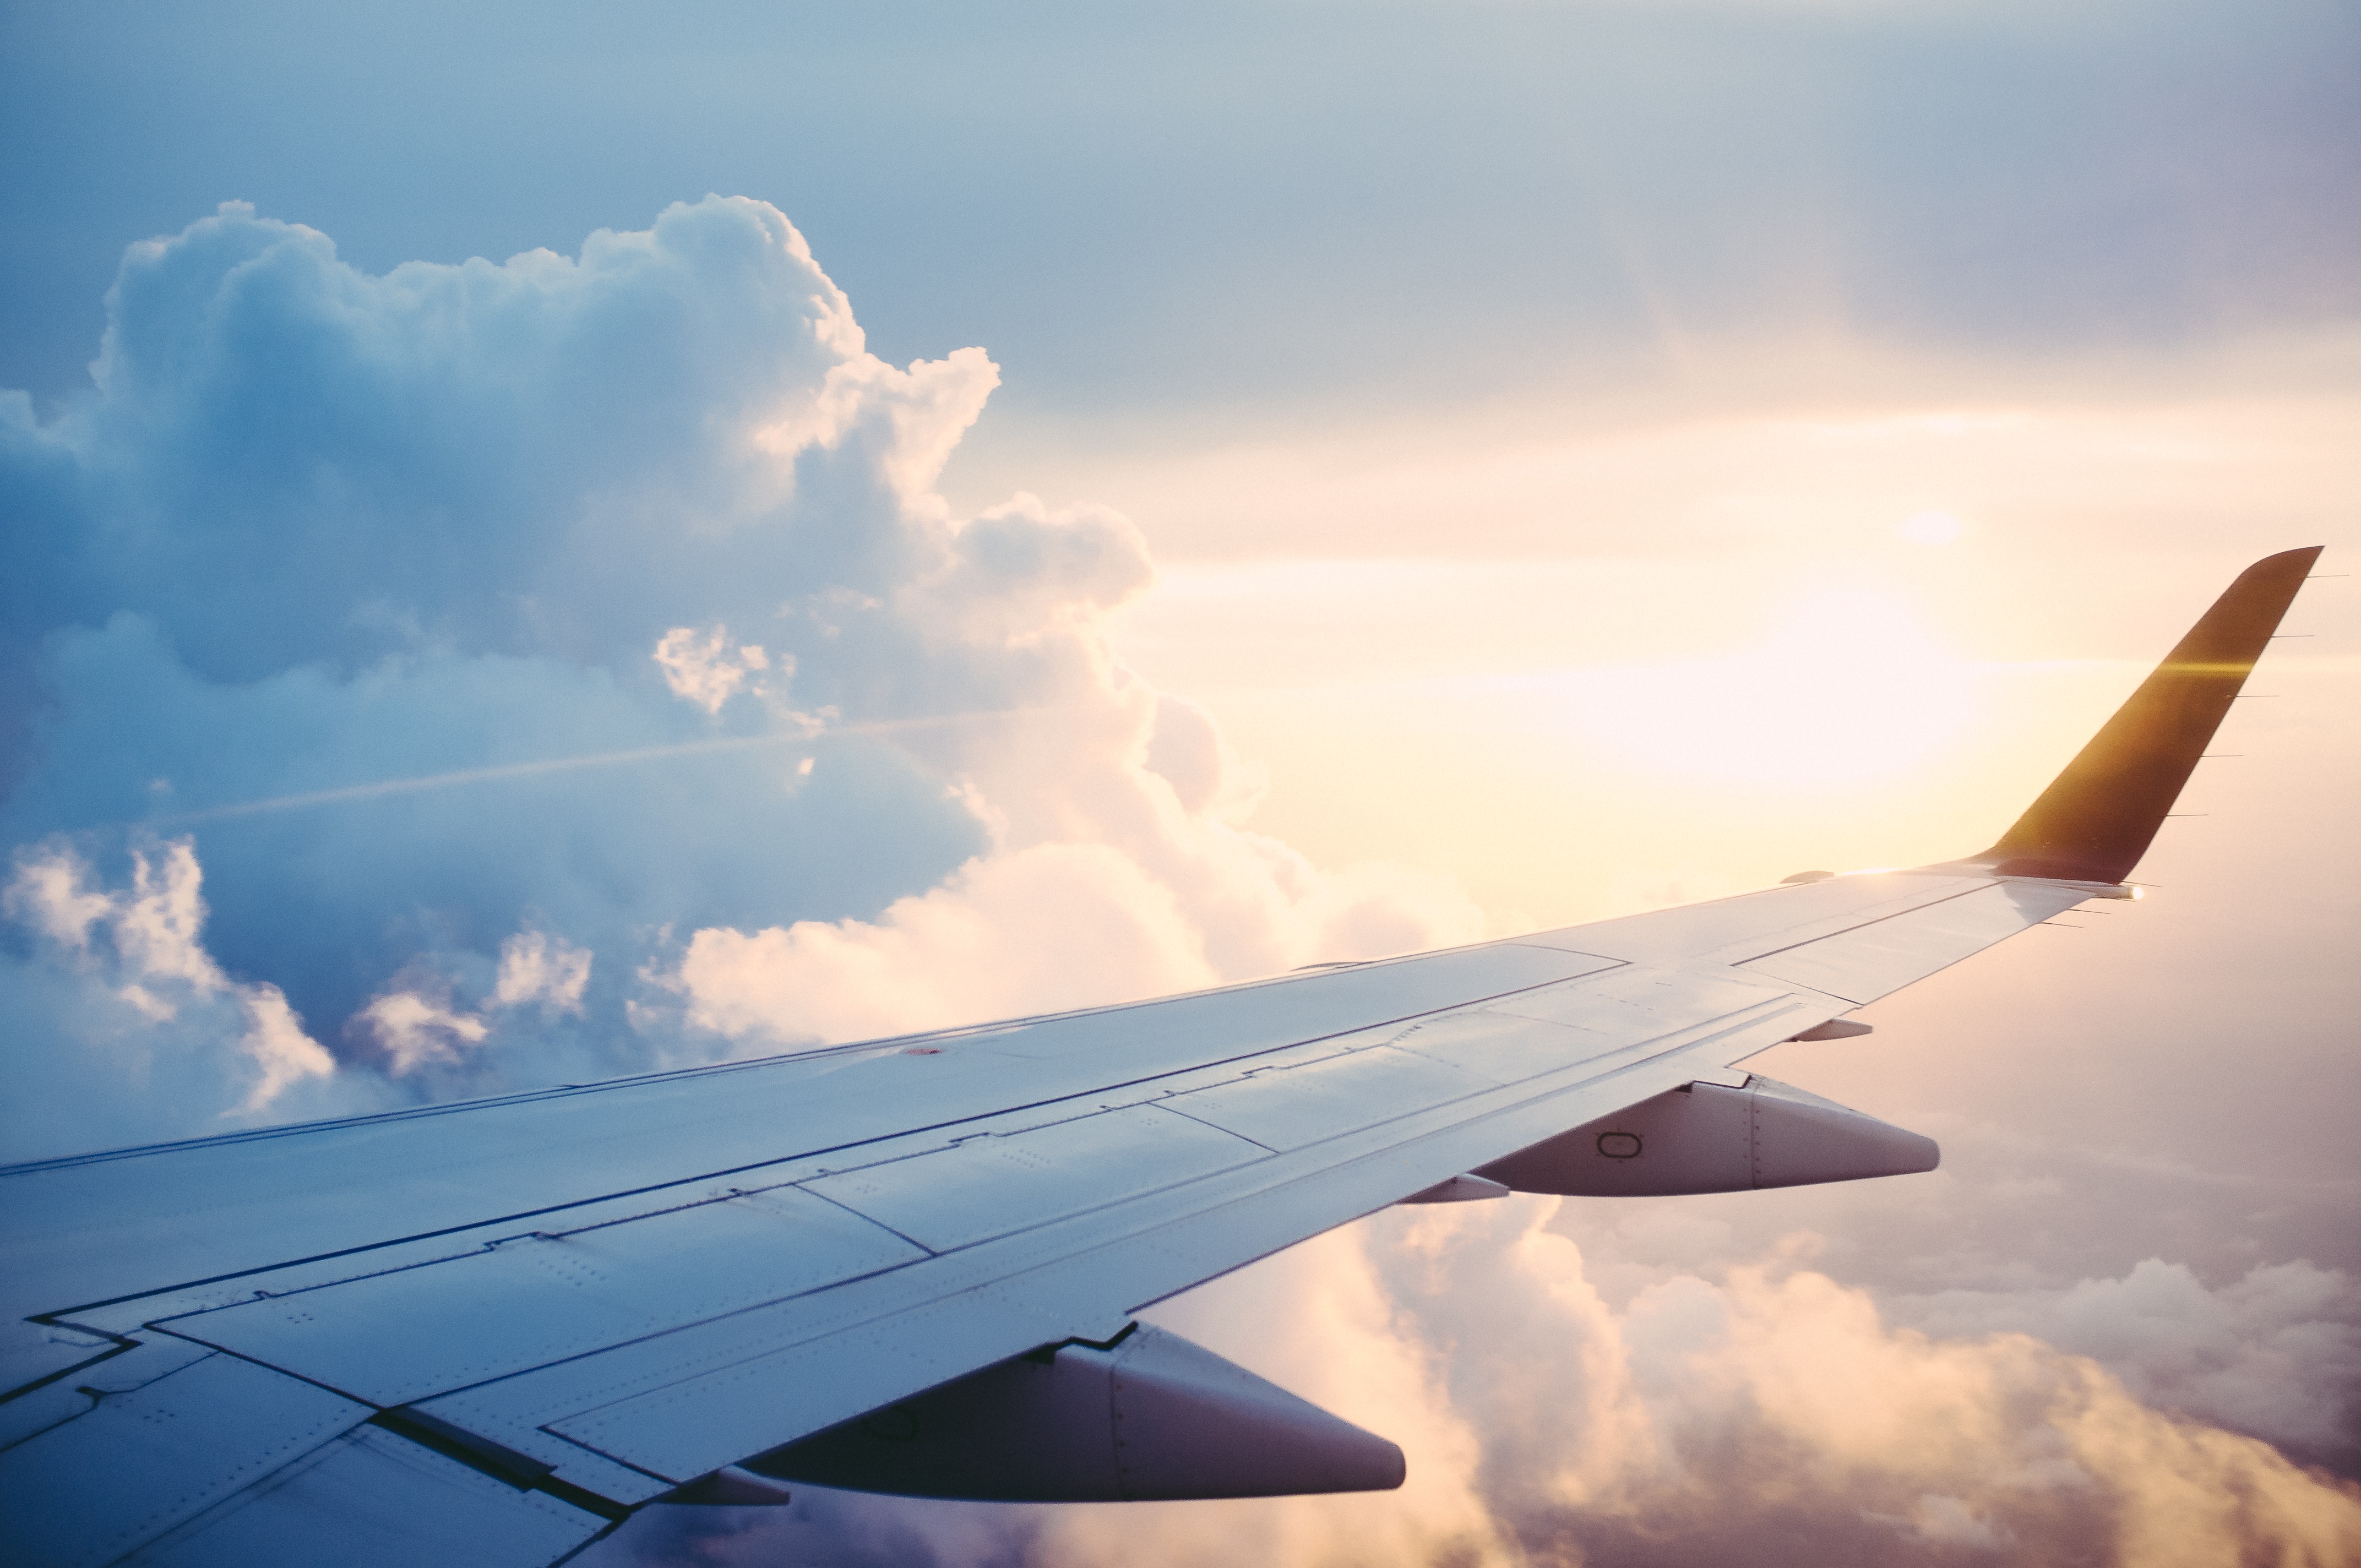 Vé máy bay nội địa tăng cao, khách chuyển hướng chọn tour du lịch nước ngoài